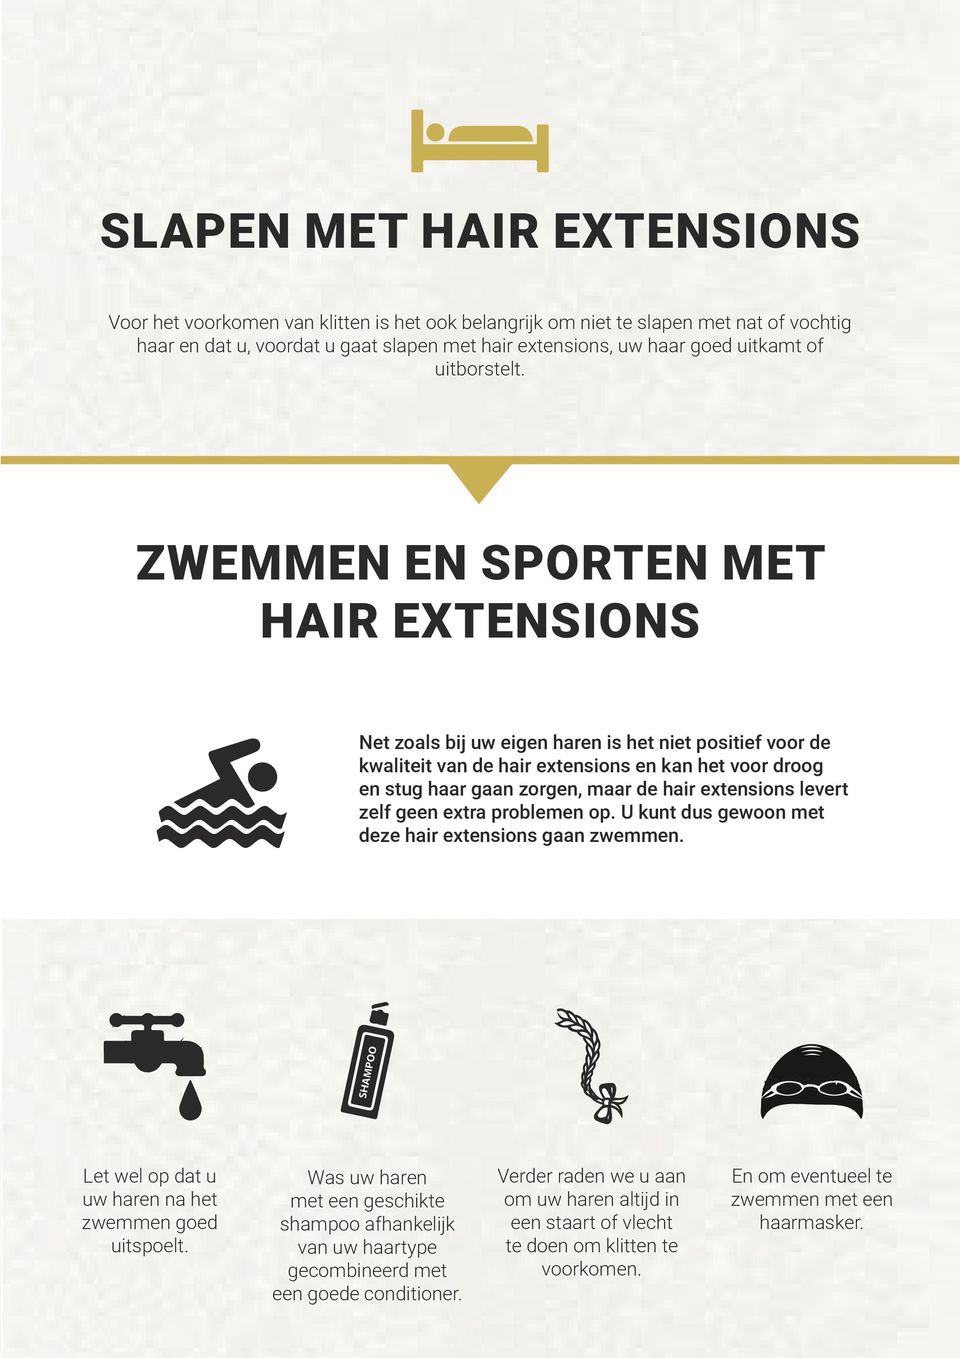 ZWEMMEN EN SPORTEN MET HAIR EXTENSIONS Net zoals bij uw eigen haren is het niet positief voor de kwaliteit van de hair extensions en kan het voor droog en stug haar gaan zorgen, maar de hair